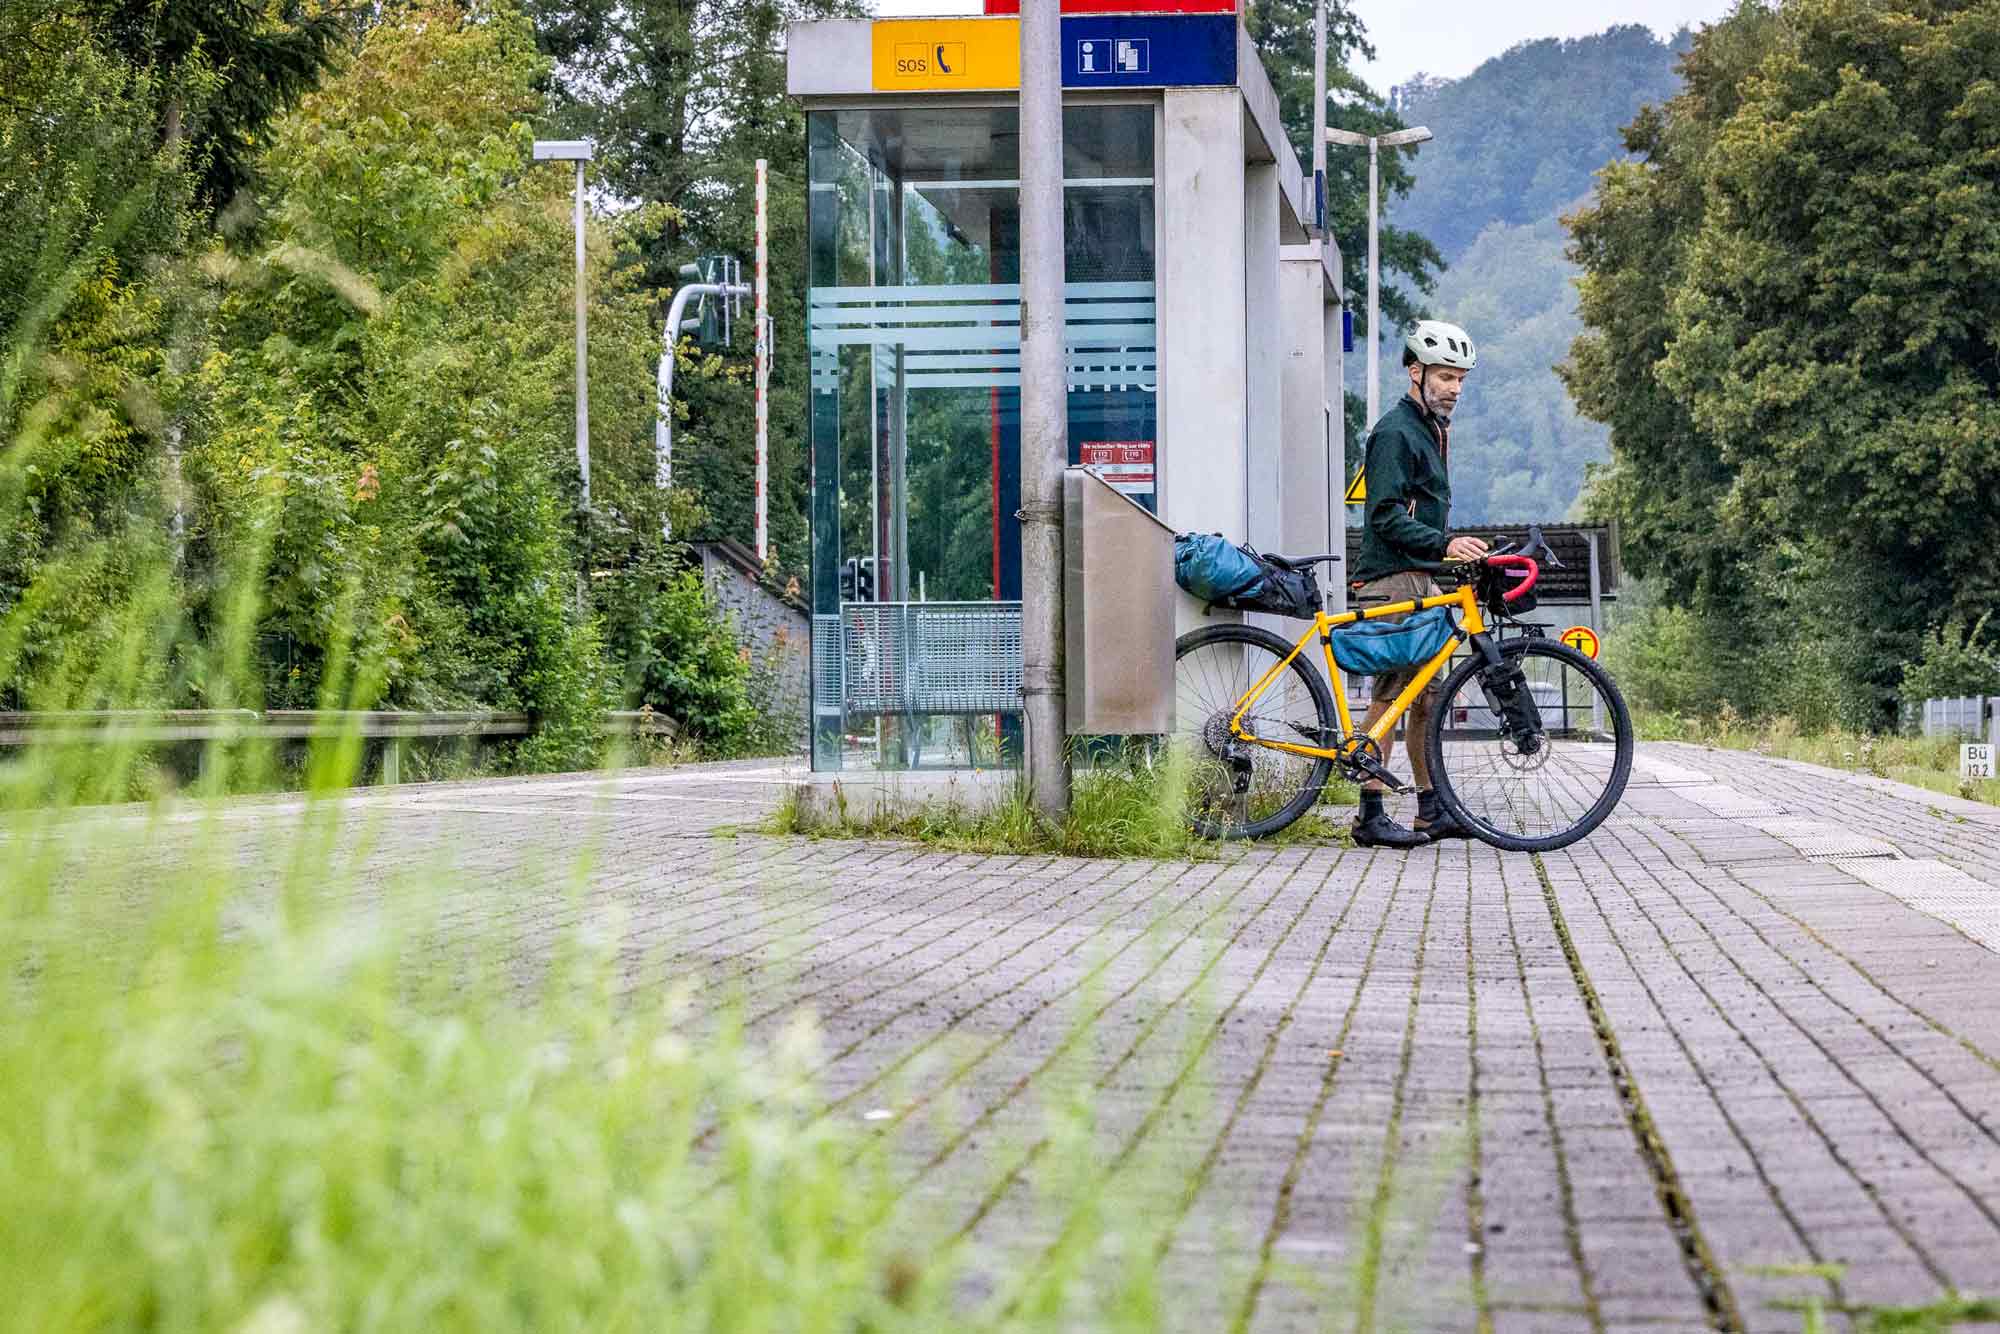 Um erst mal zum. Europaradweg r1 zu kommen, haben wir uns in die bahn gesetzt. Die verbindungen ins münsterland sind top – ideal also für entspanntes bikepacking im münsterland ganz ohne auto!